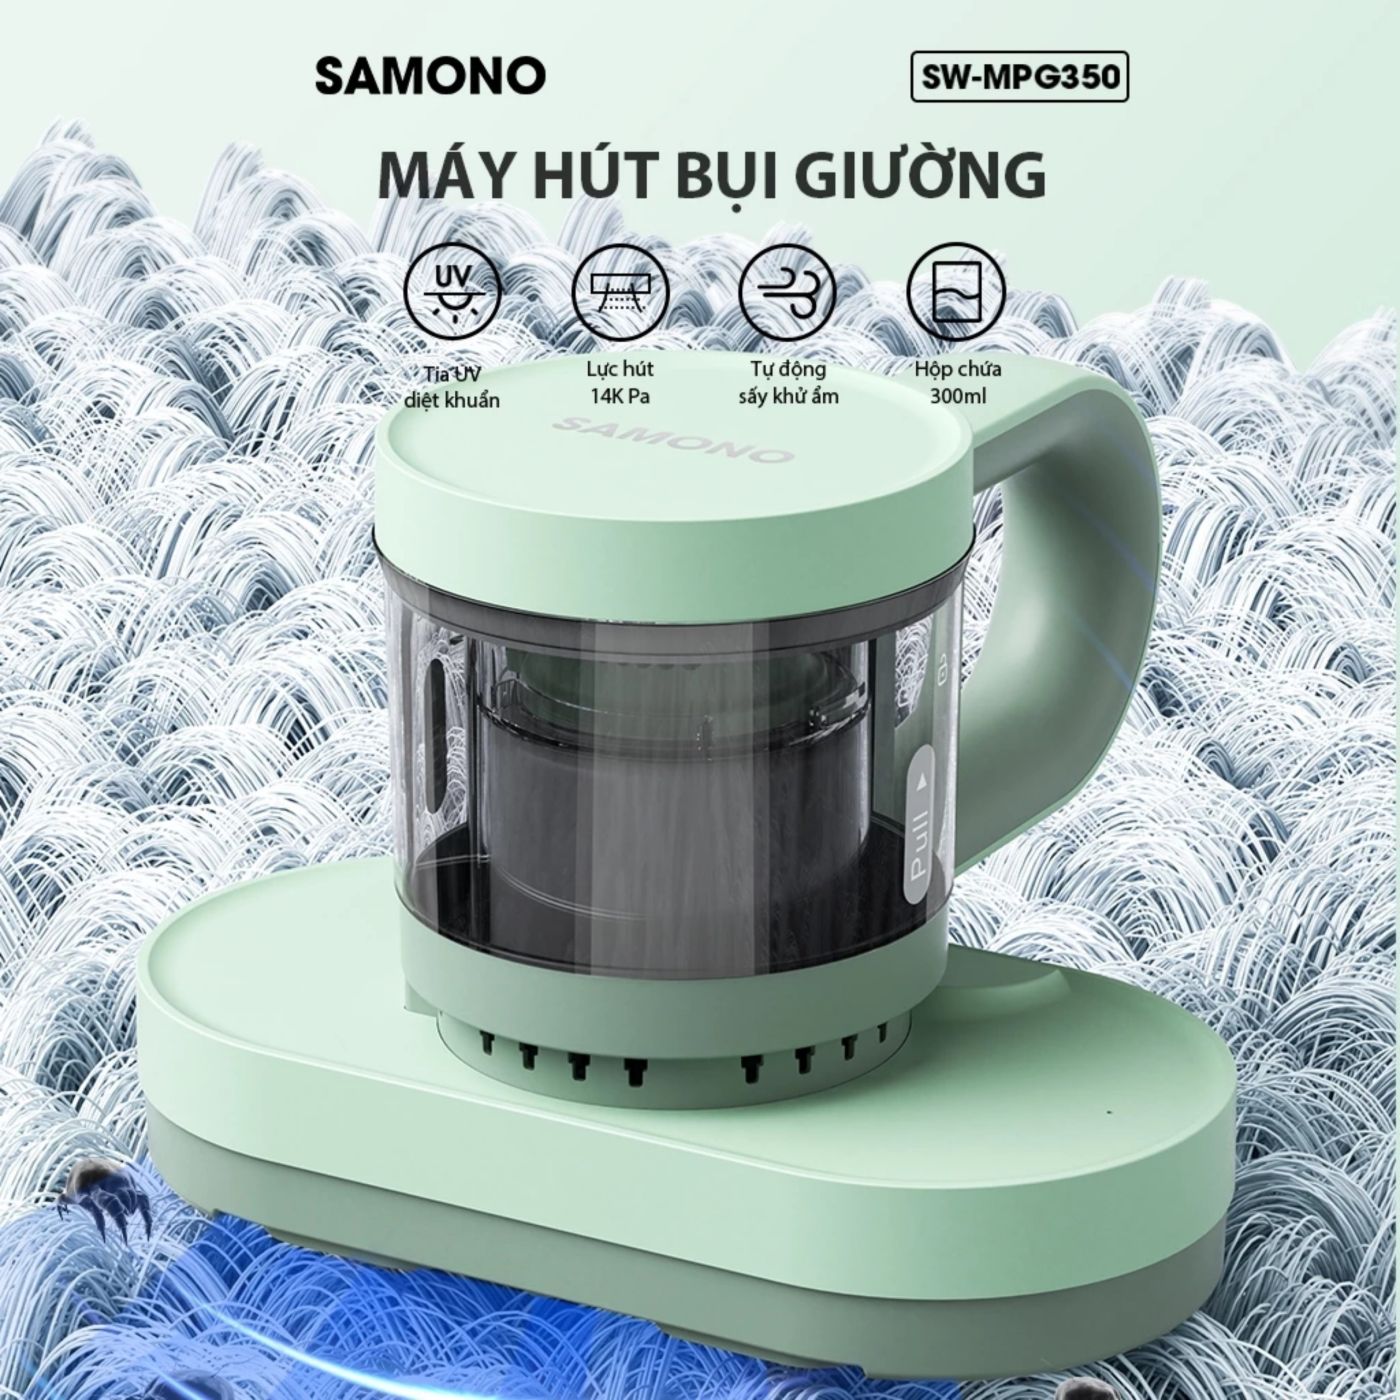 Máy hút bụi nệm giường Samono SW-MPG350, lực hút mạnh 14KPA, hộp chứa 300ml, tia UV diệt khuẩn